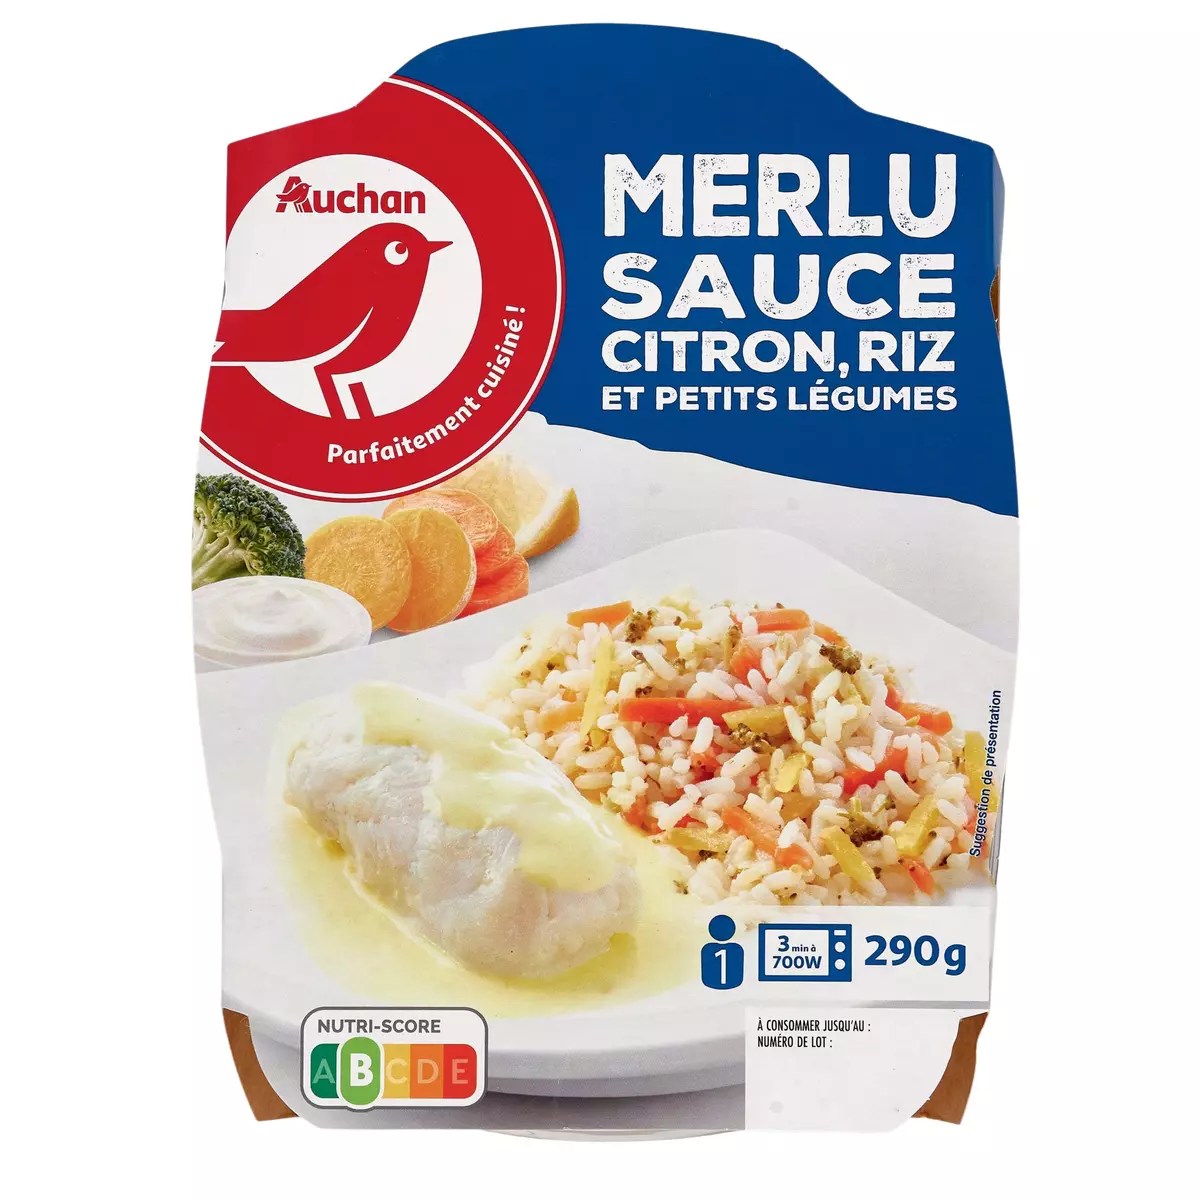 AUCHAN Merlu sauce citron riz et petits légumes 1 portion 290g